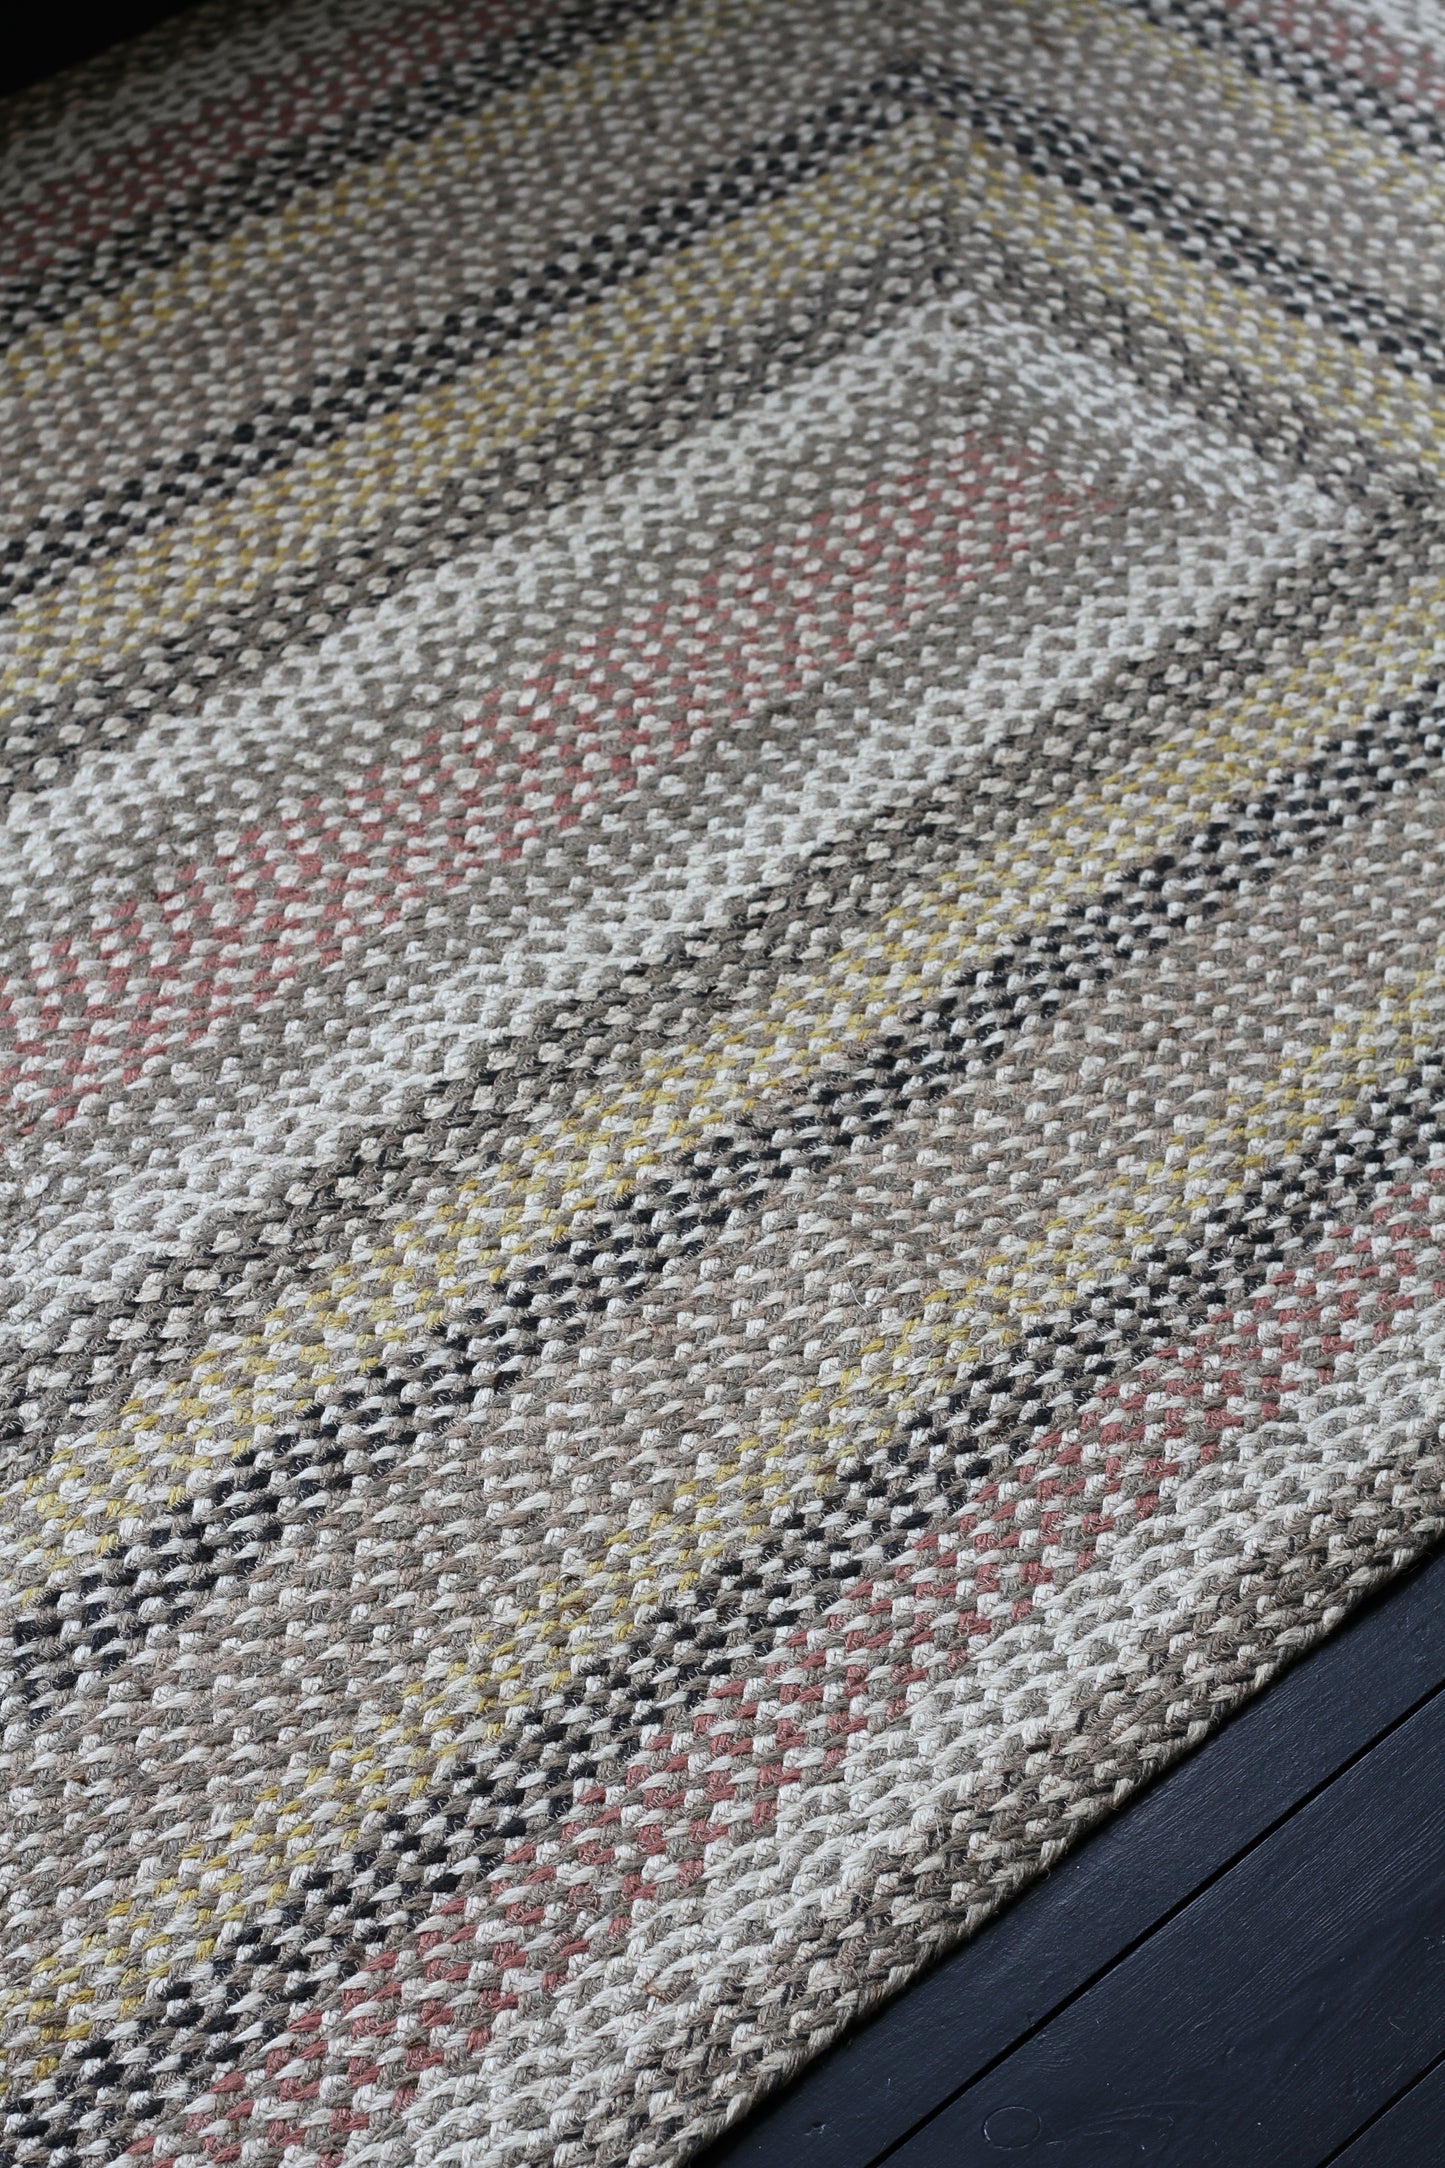 American braided jute rug